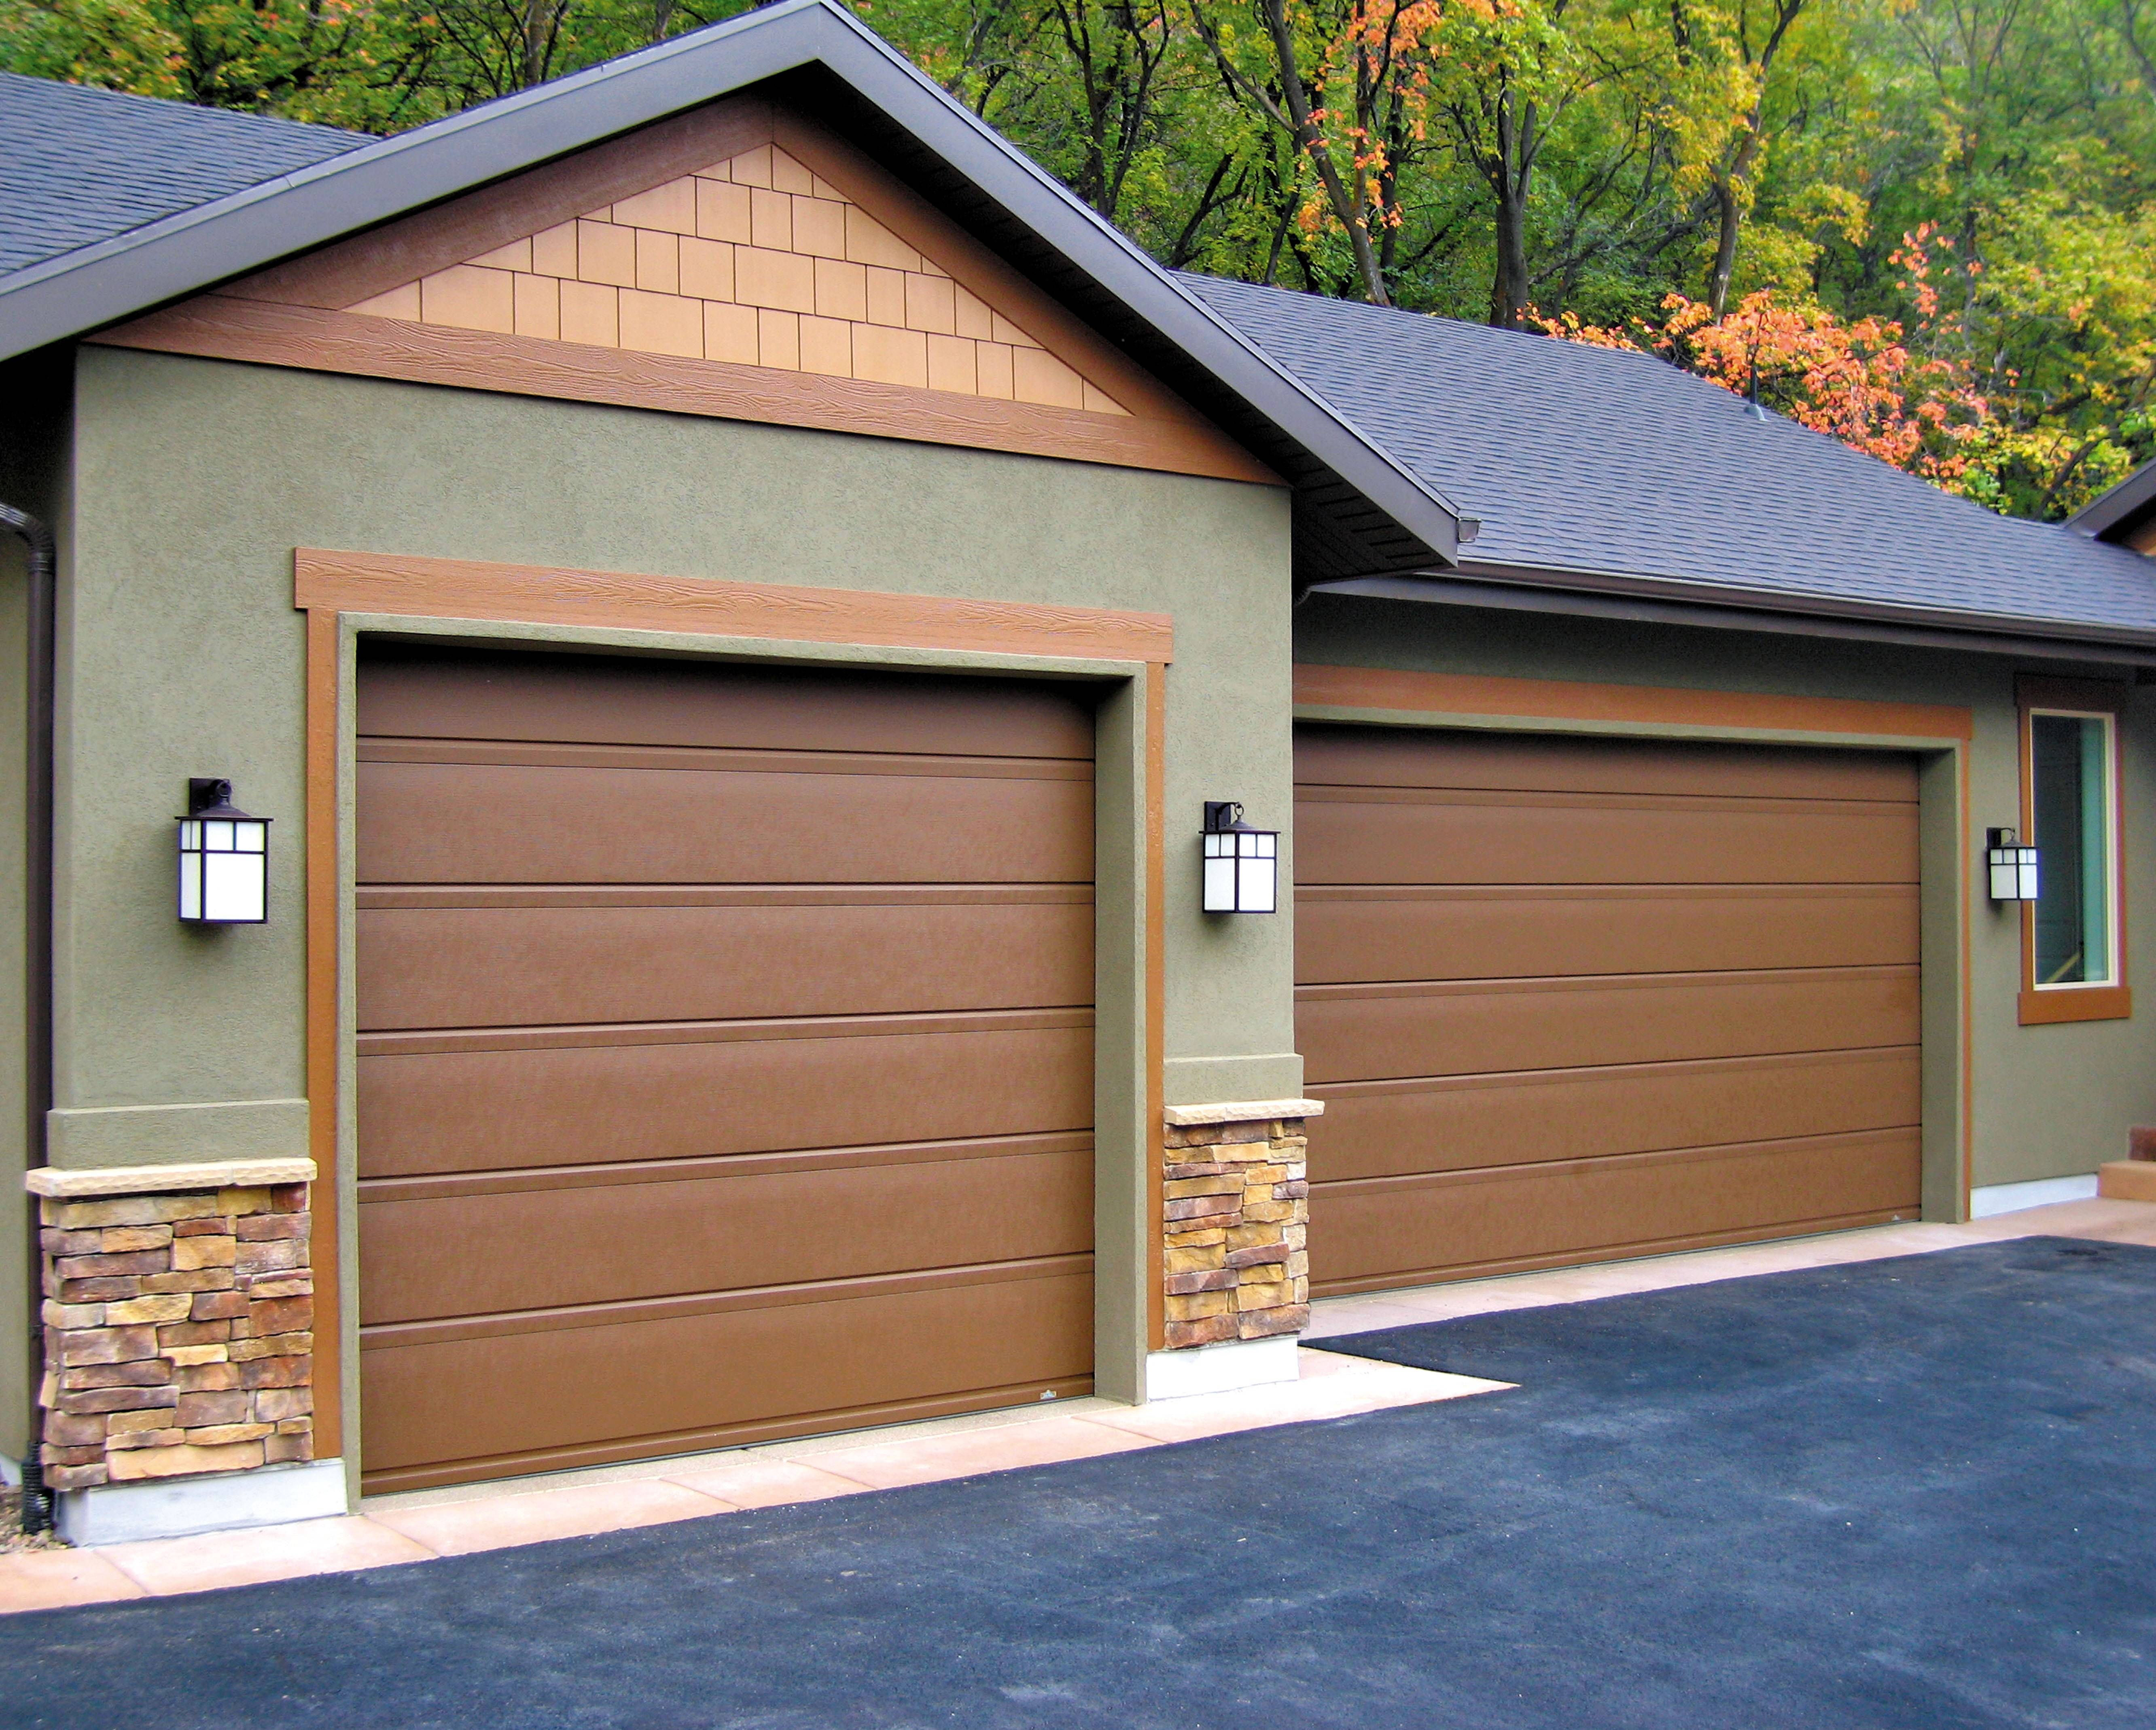 Garage цена. Фасад гаража. Отделка гаража снаружи. Автоматические гаражные ворота. Отделка гаража с наружим.